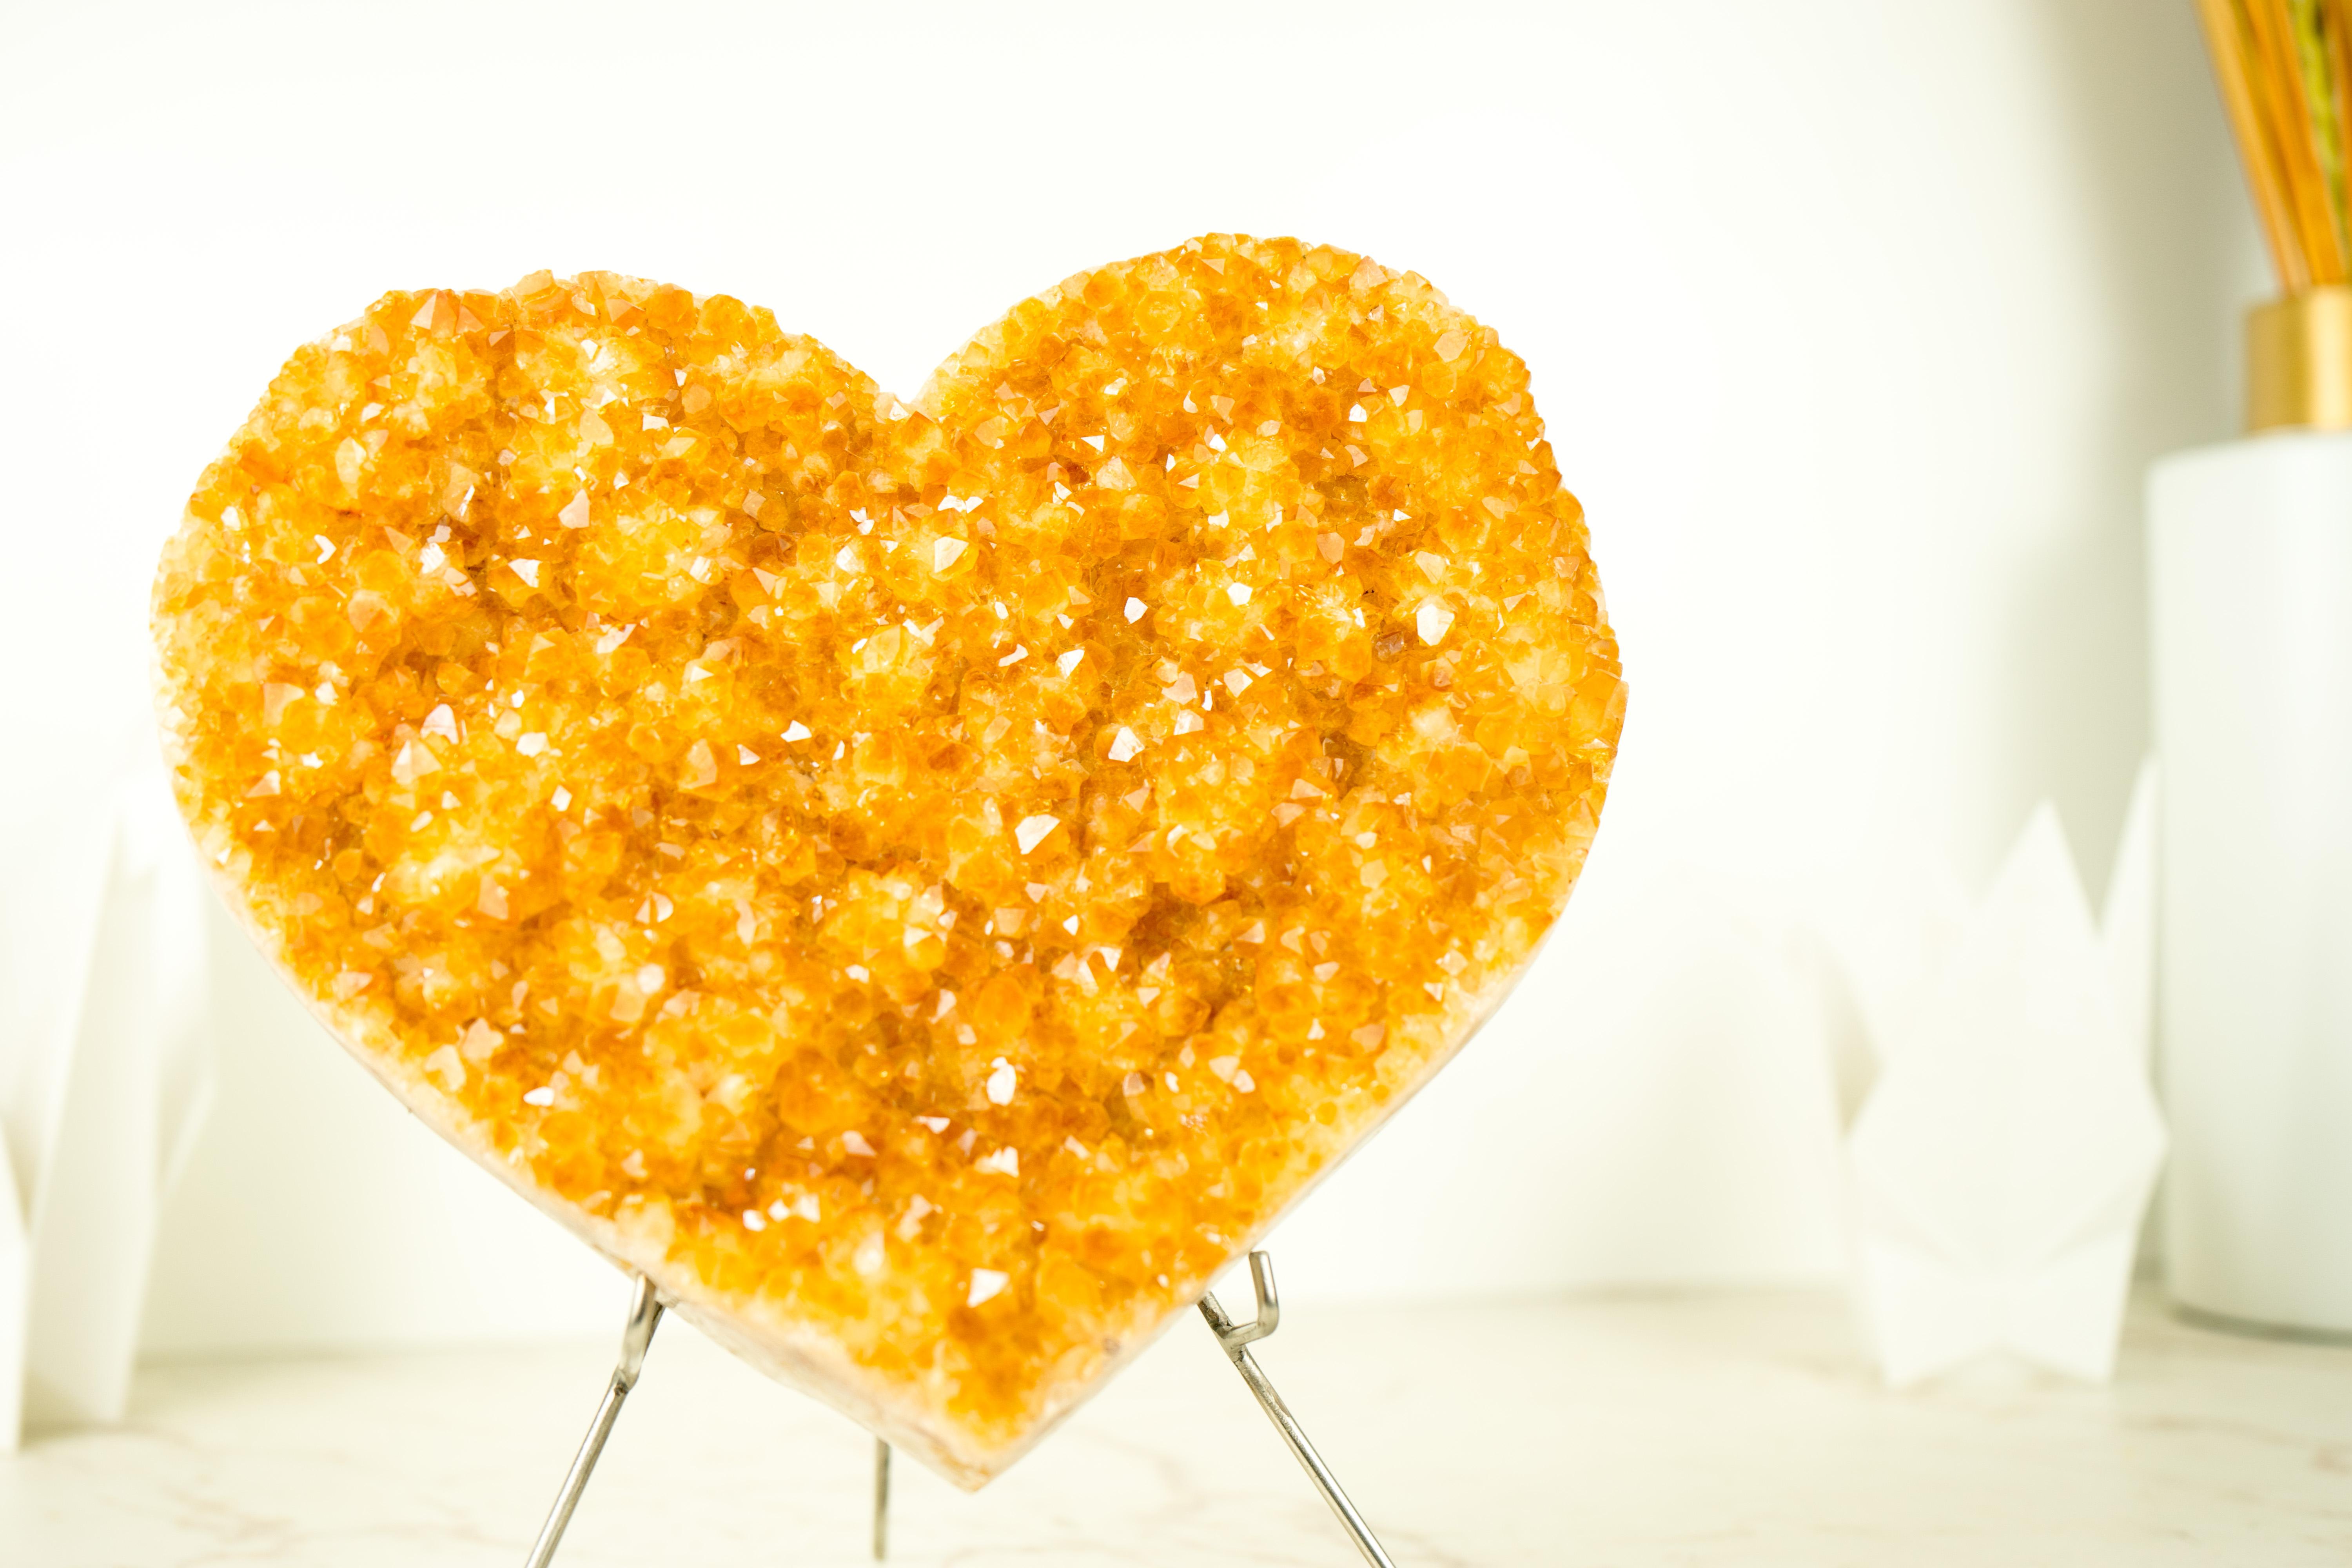 Großes Citrin-Herz mit gold-orangem, glänzendem Citrin-Druzy

▫️ Beschreibung

Dieses aus einem einzelnen Citrin-Cluster handgeschnitzte goldorangefarbene Citrin-Herz besticht durch seine wunderbare Ästhetik und seinen funkelnden Druzy. Dieser